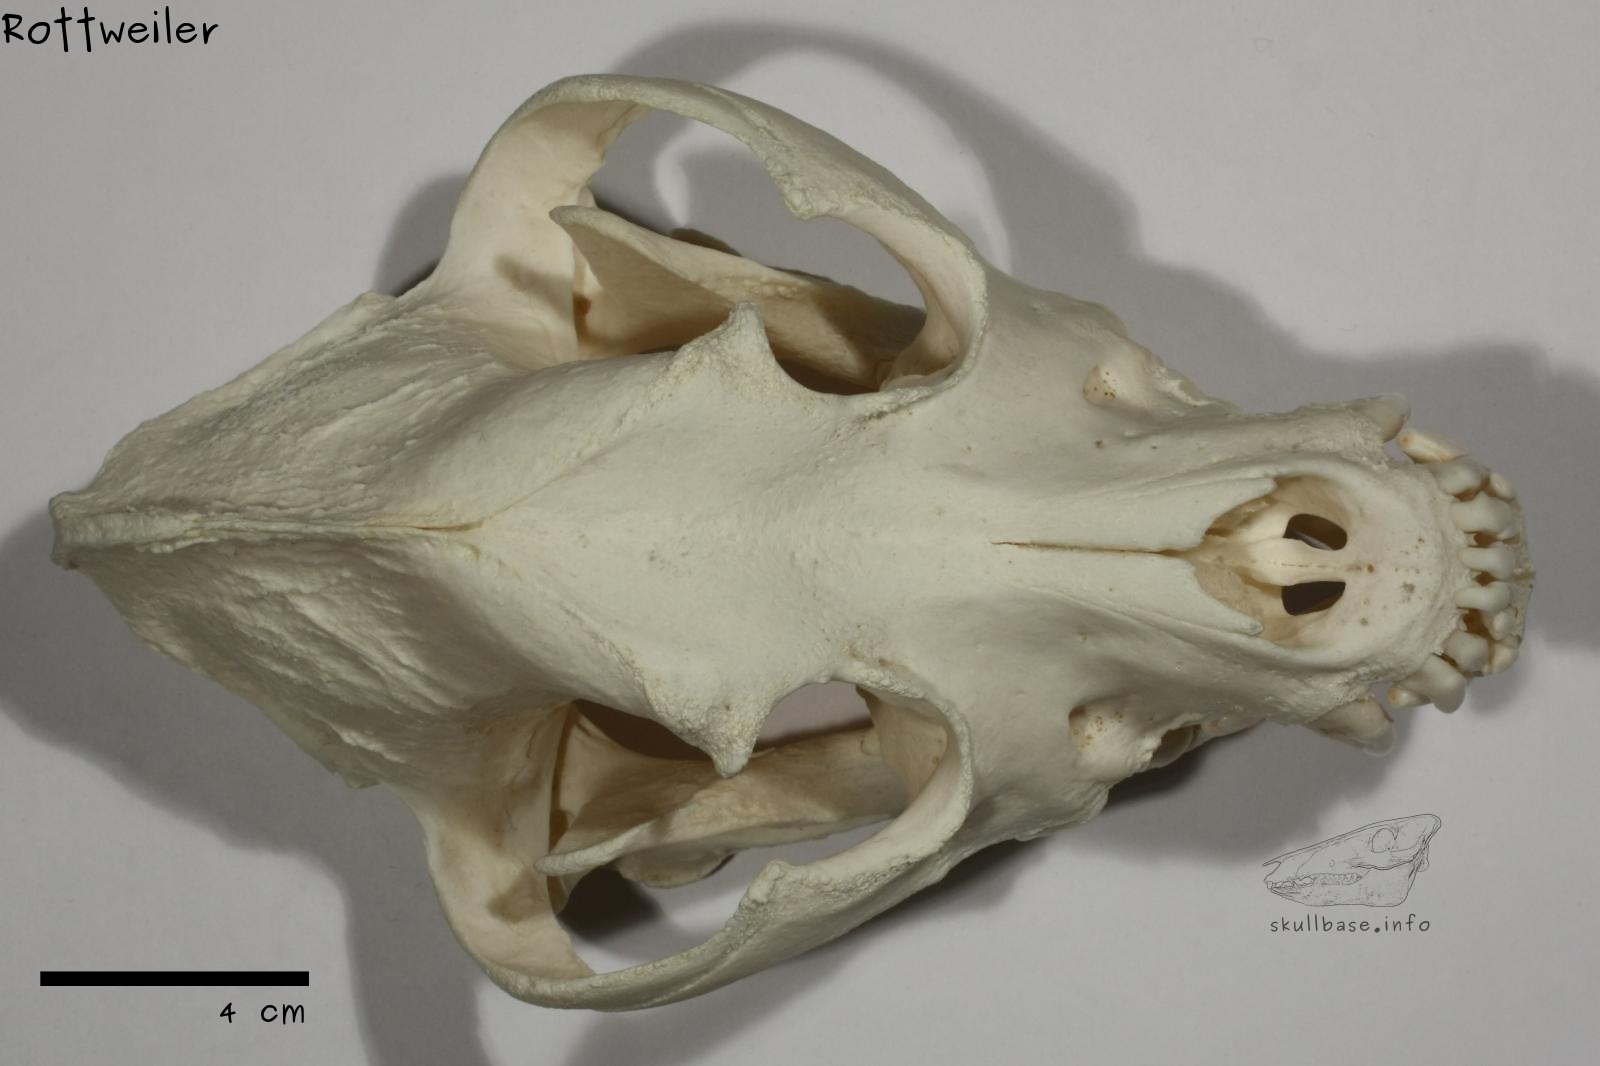 Rottweiler (Canis lupus familiaris) skull dorsal view